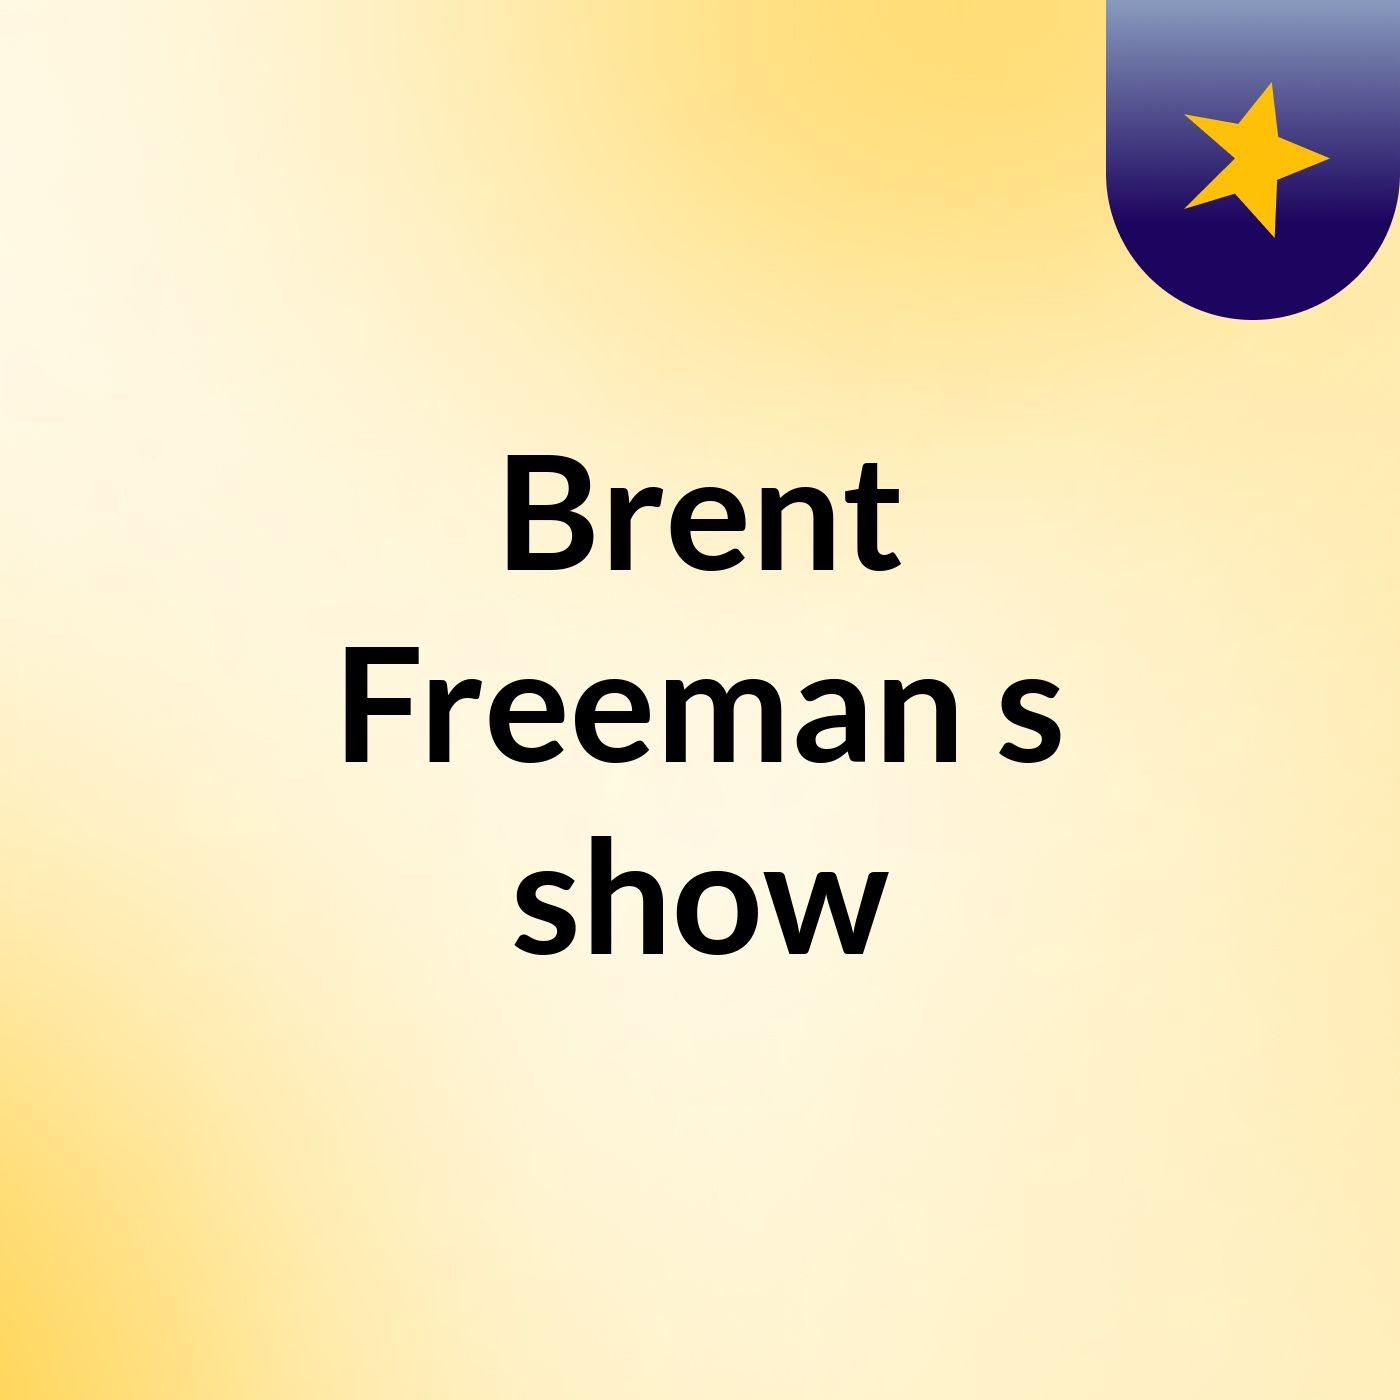 Episode 11 - Brent Freeman's show